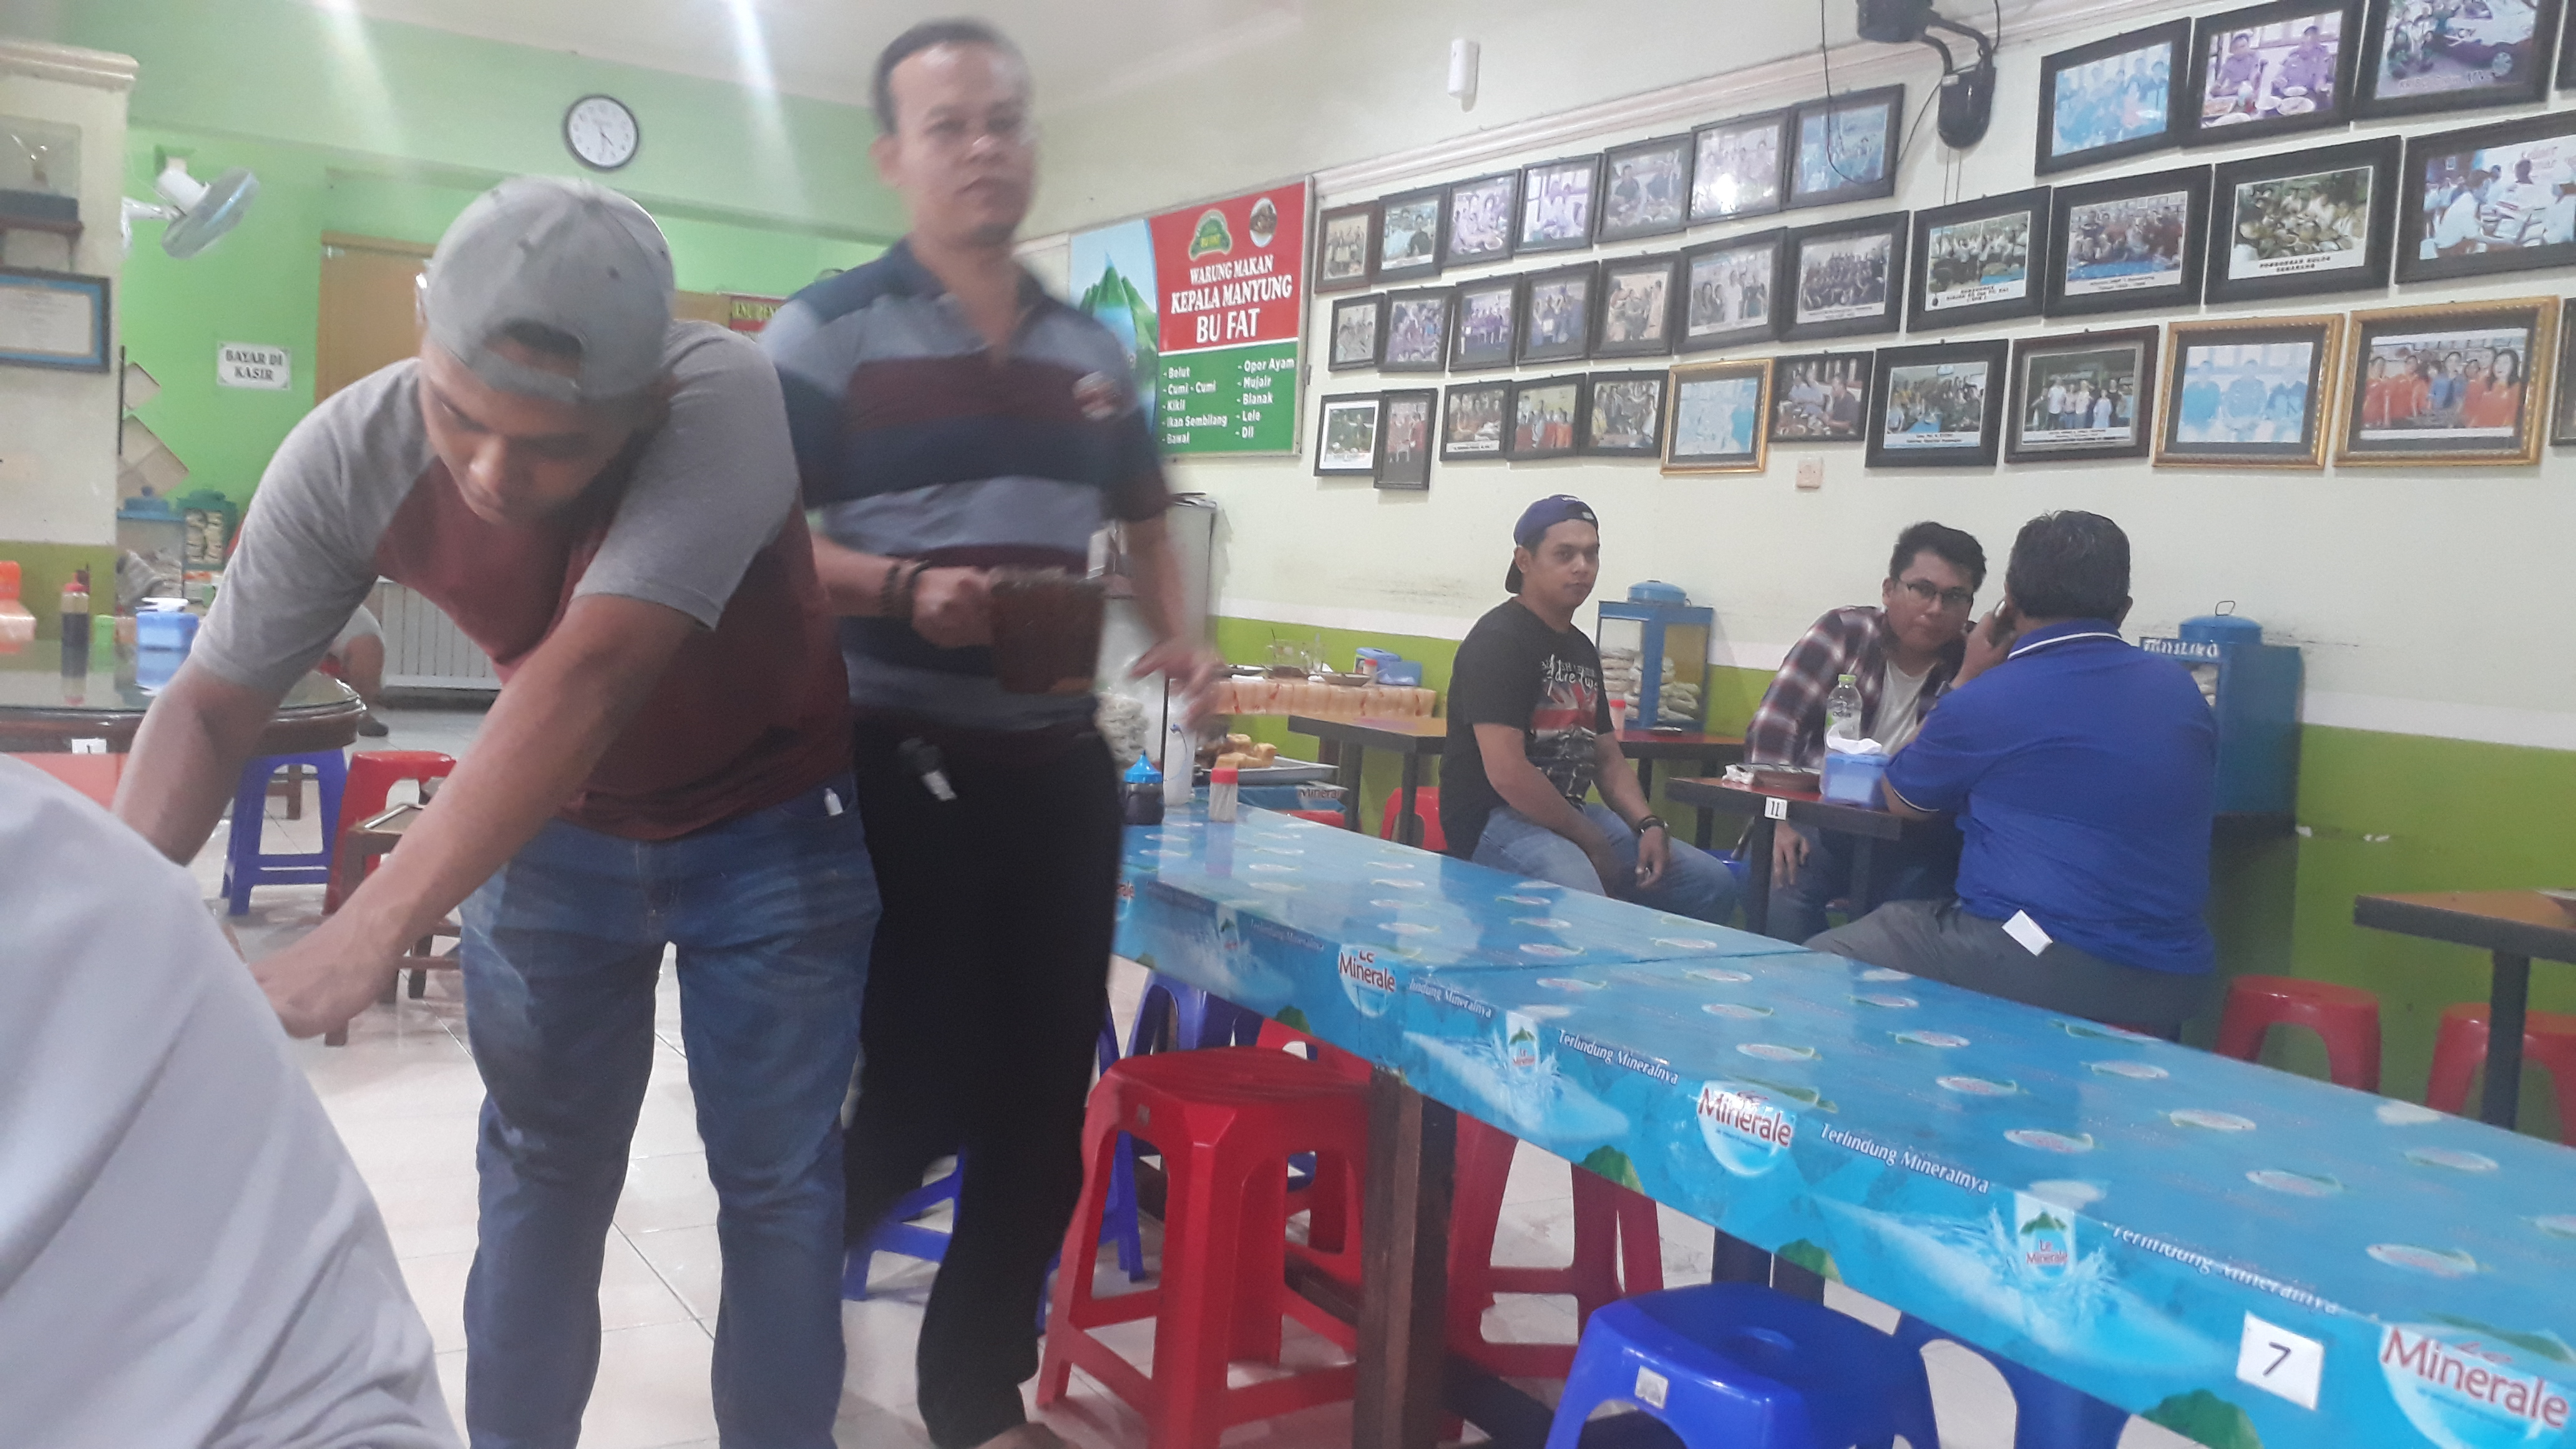 Kuliner Semarang Kepala Manyung Bu Fat Cita Rasanya Khas dan Lezat